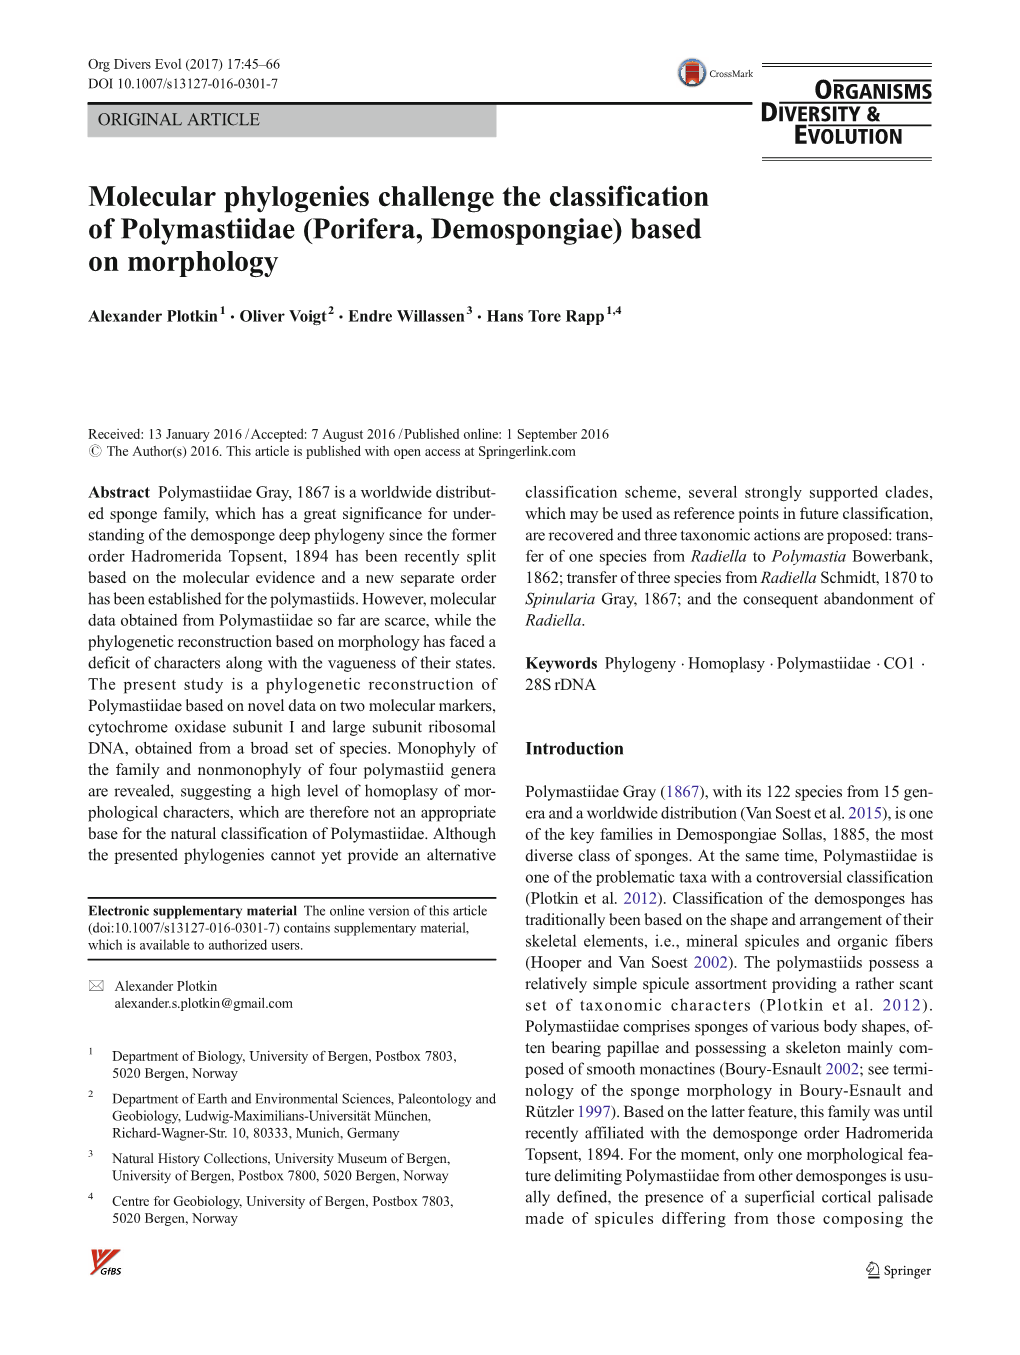 Molecular Phylogenies Challenge the Classification of Polymastiidae (Porifera, Demospongiae) Based on Morphology